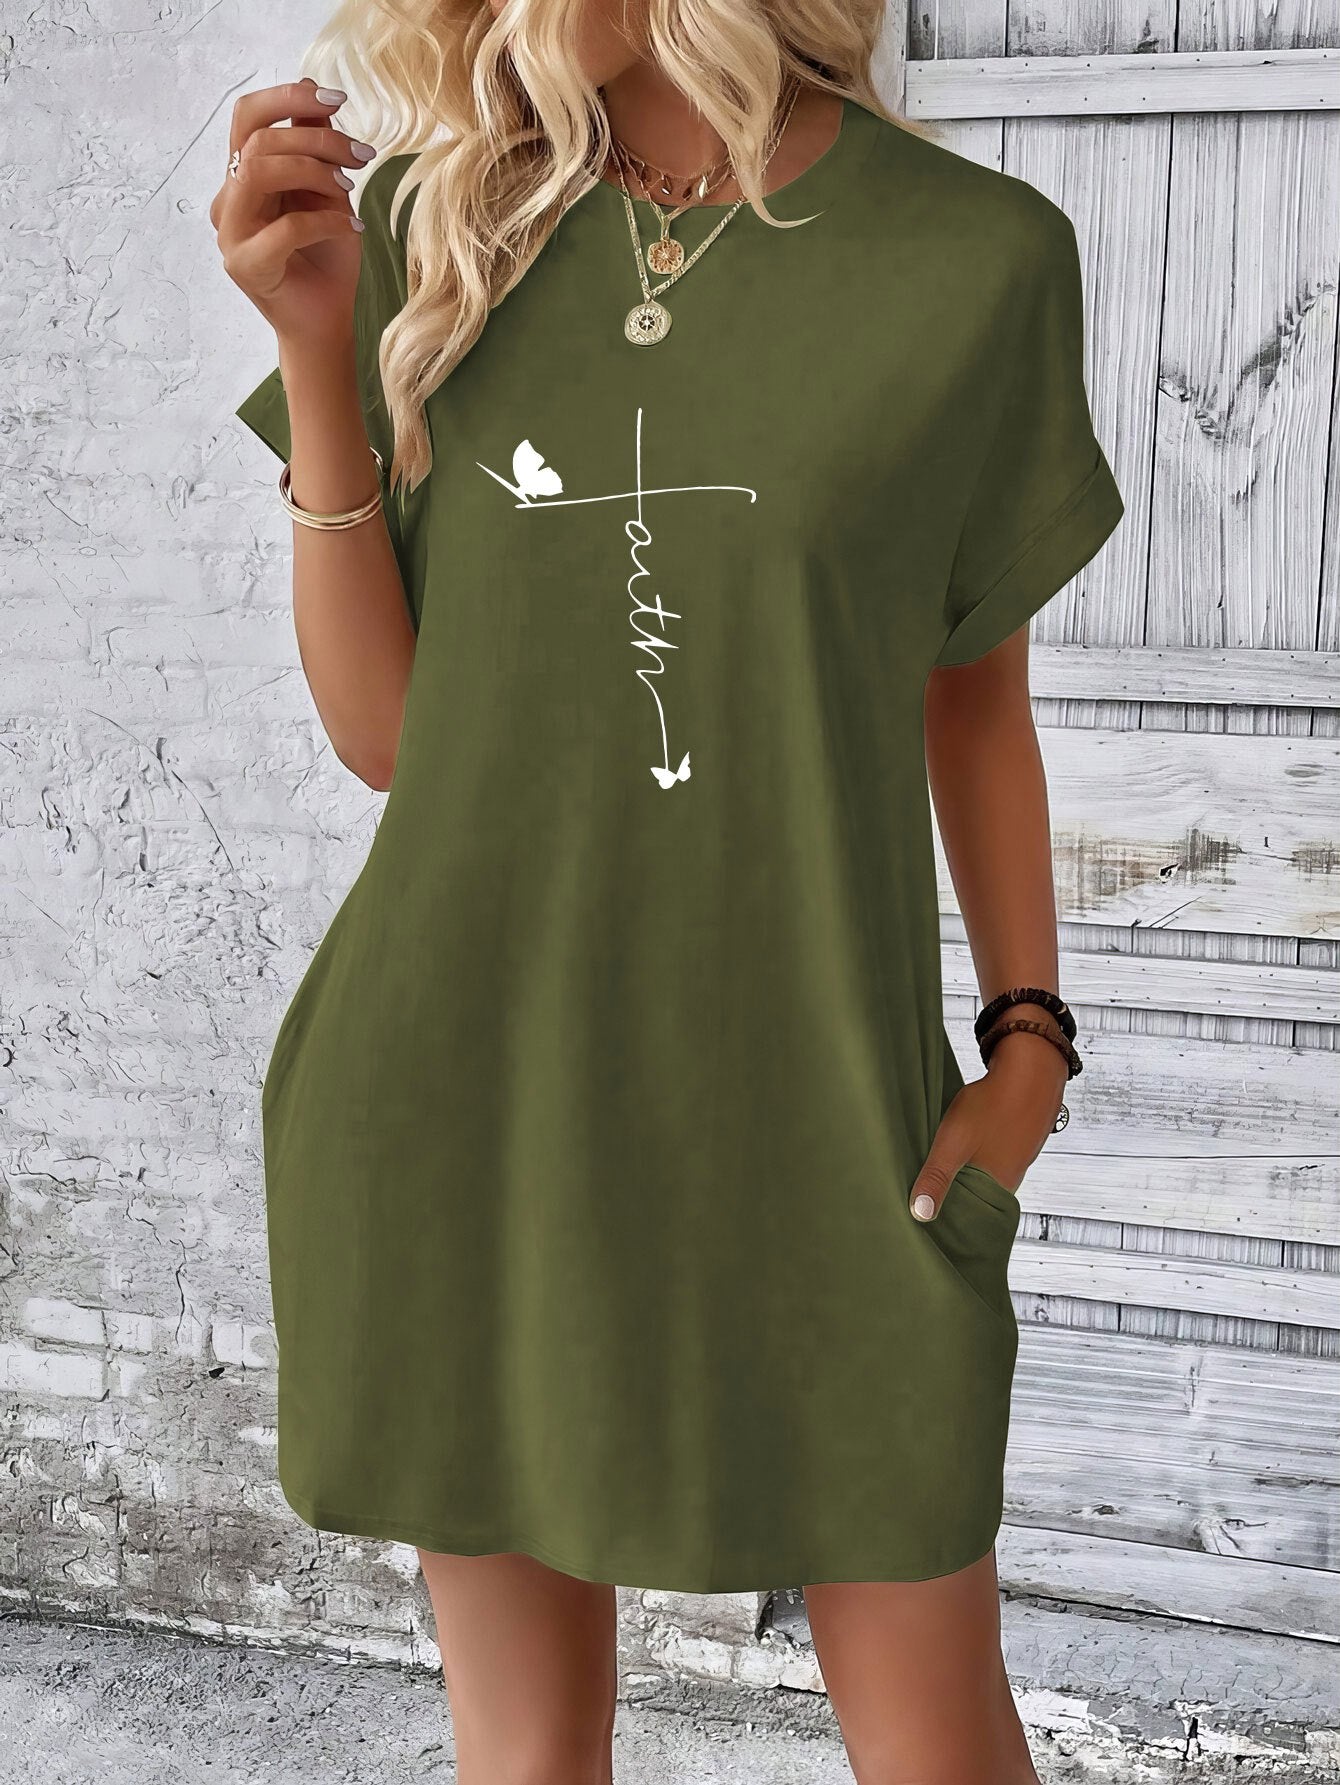 Faith Women's Christian T-shirt Casual Dress claimedbygoddesigns